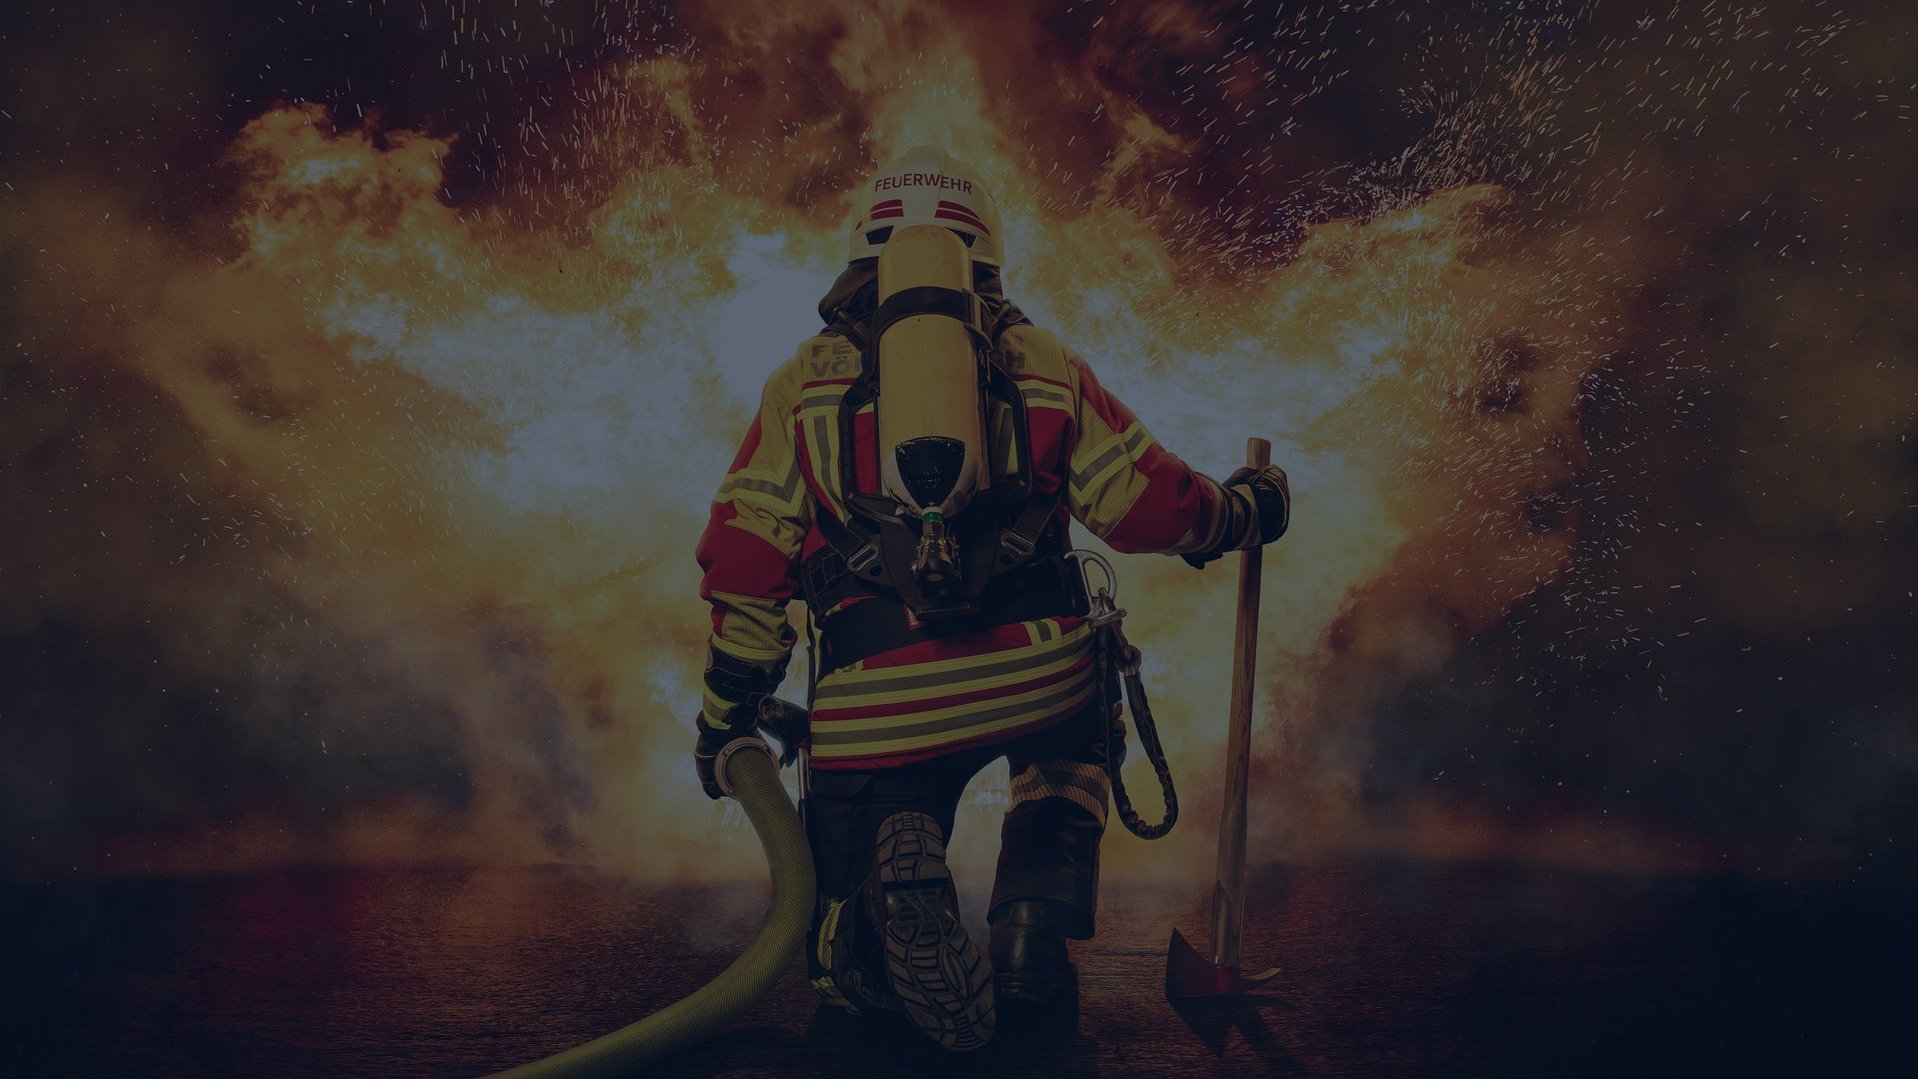 Ein Feuerwehrmann mit Schutzkleidung, Sauerstoffflasche, Beil und Wasserschlauch ist von hinten zu sehen und einem großen, lodernden Feuer zugewandt. Das Bild wurde mit einer vollflächigen dunkelblauen Überlagerung abgedunkelt.